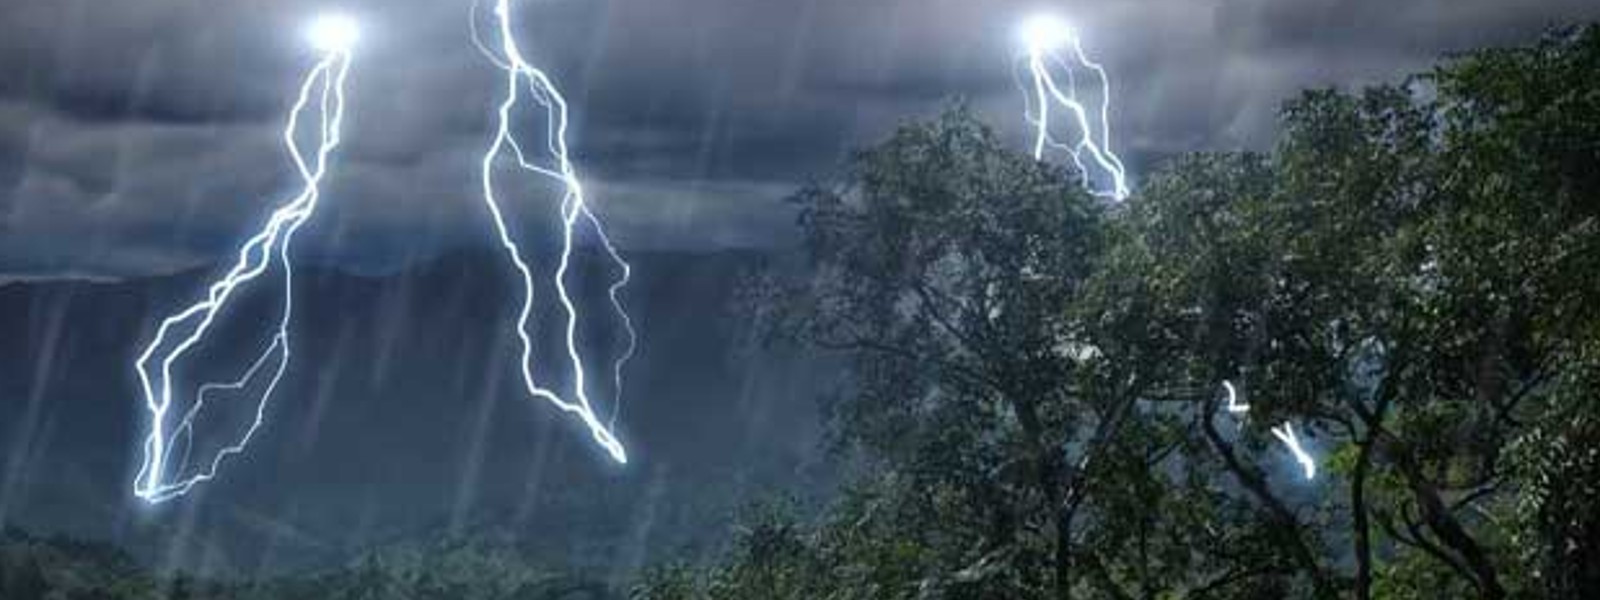 Advisory for Thundershowers across Sri Lanka